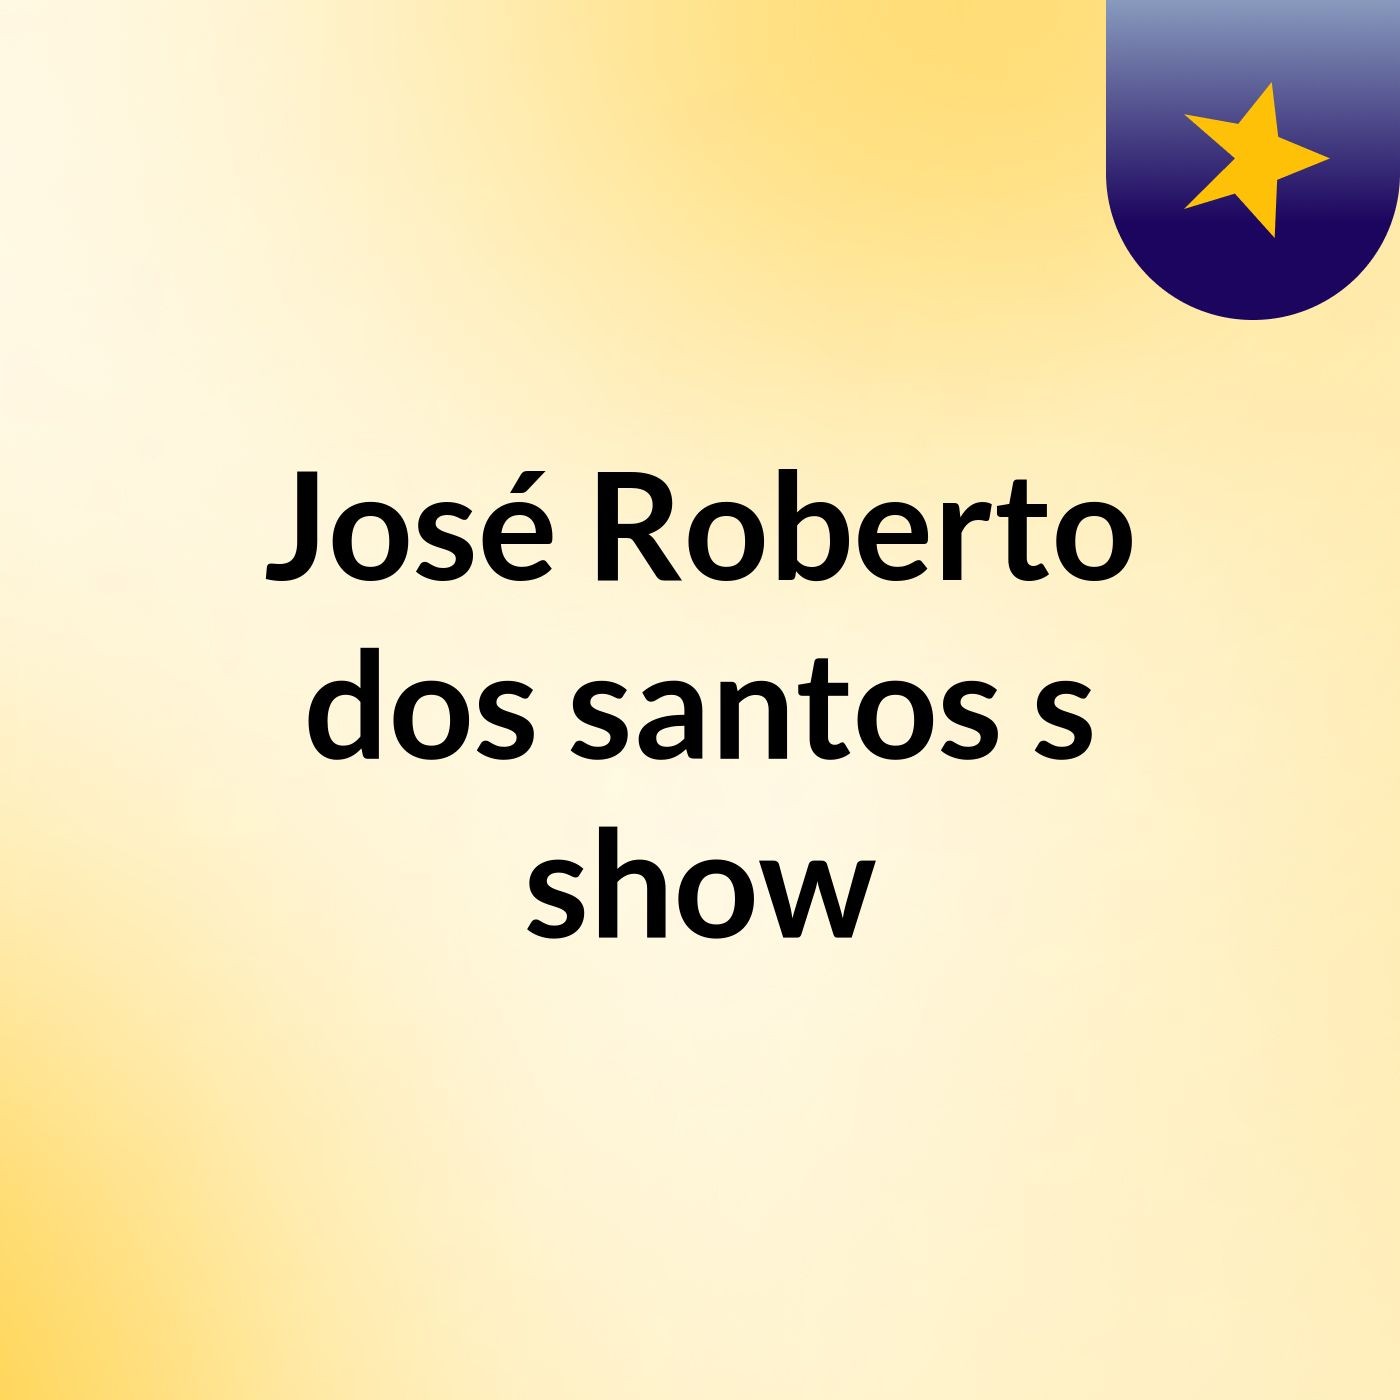 José Roberto dos santos's show